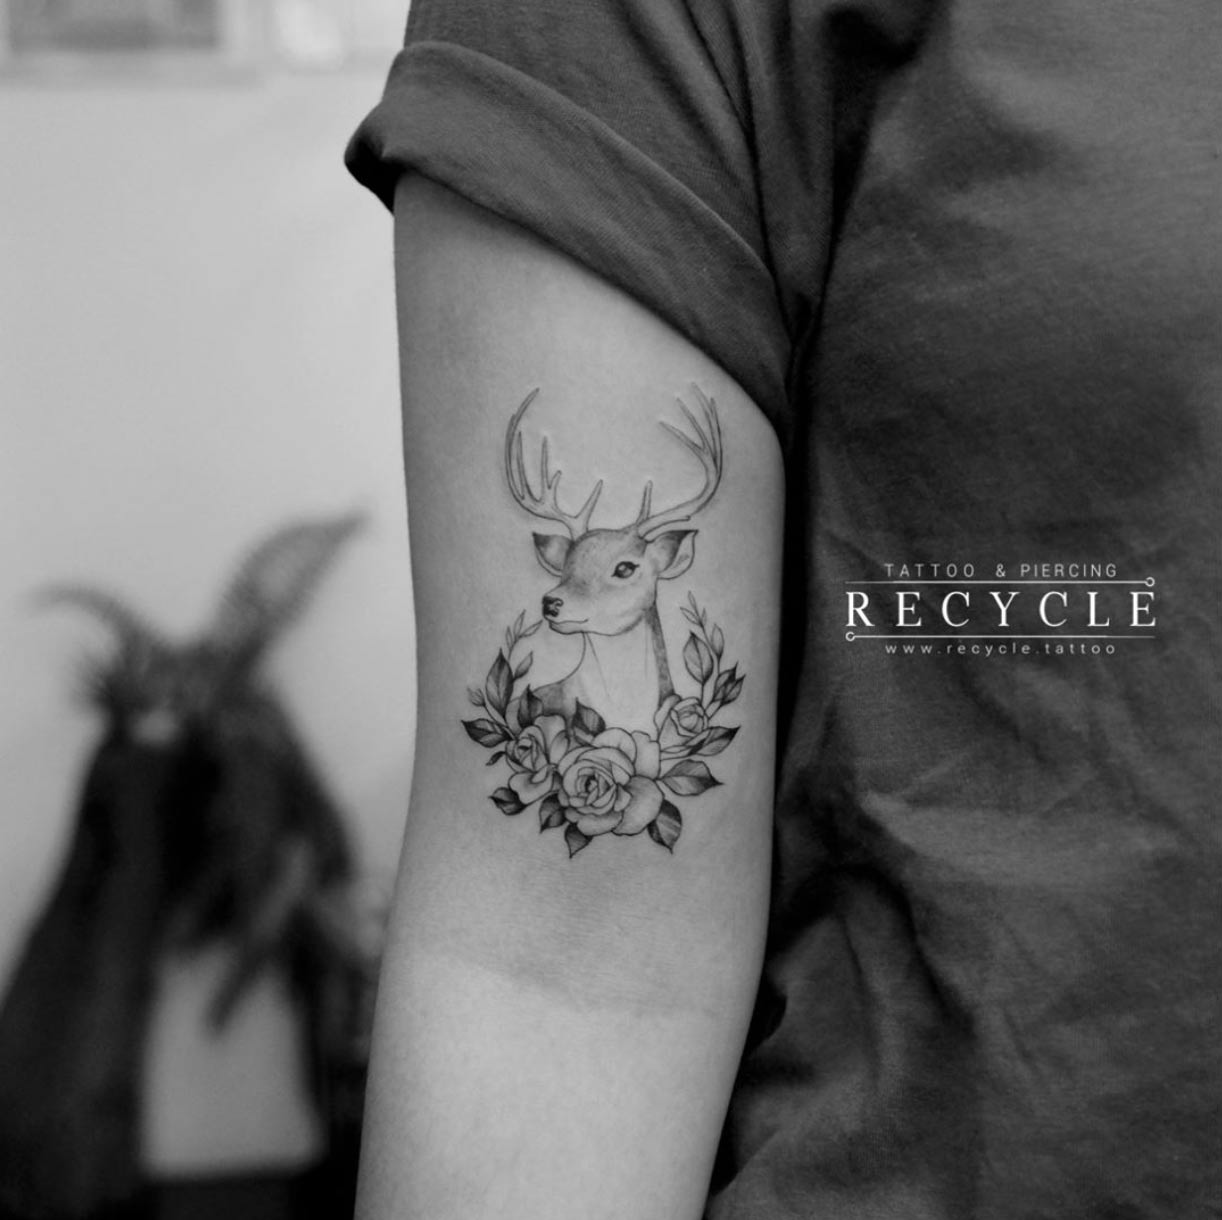 via Recycle Tattoo